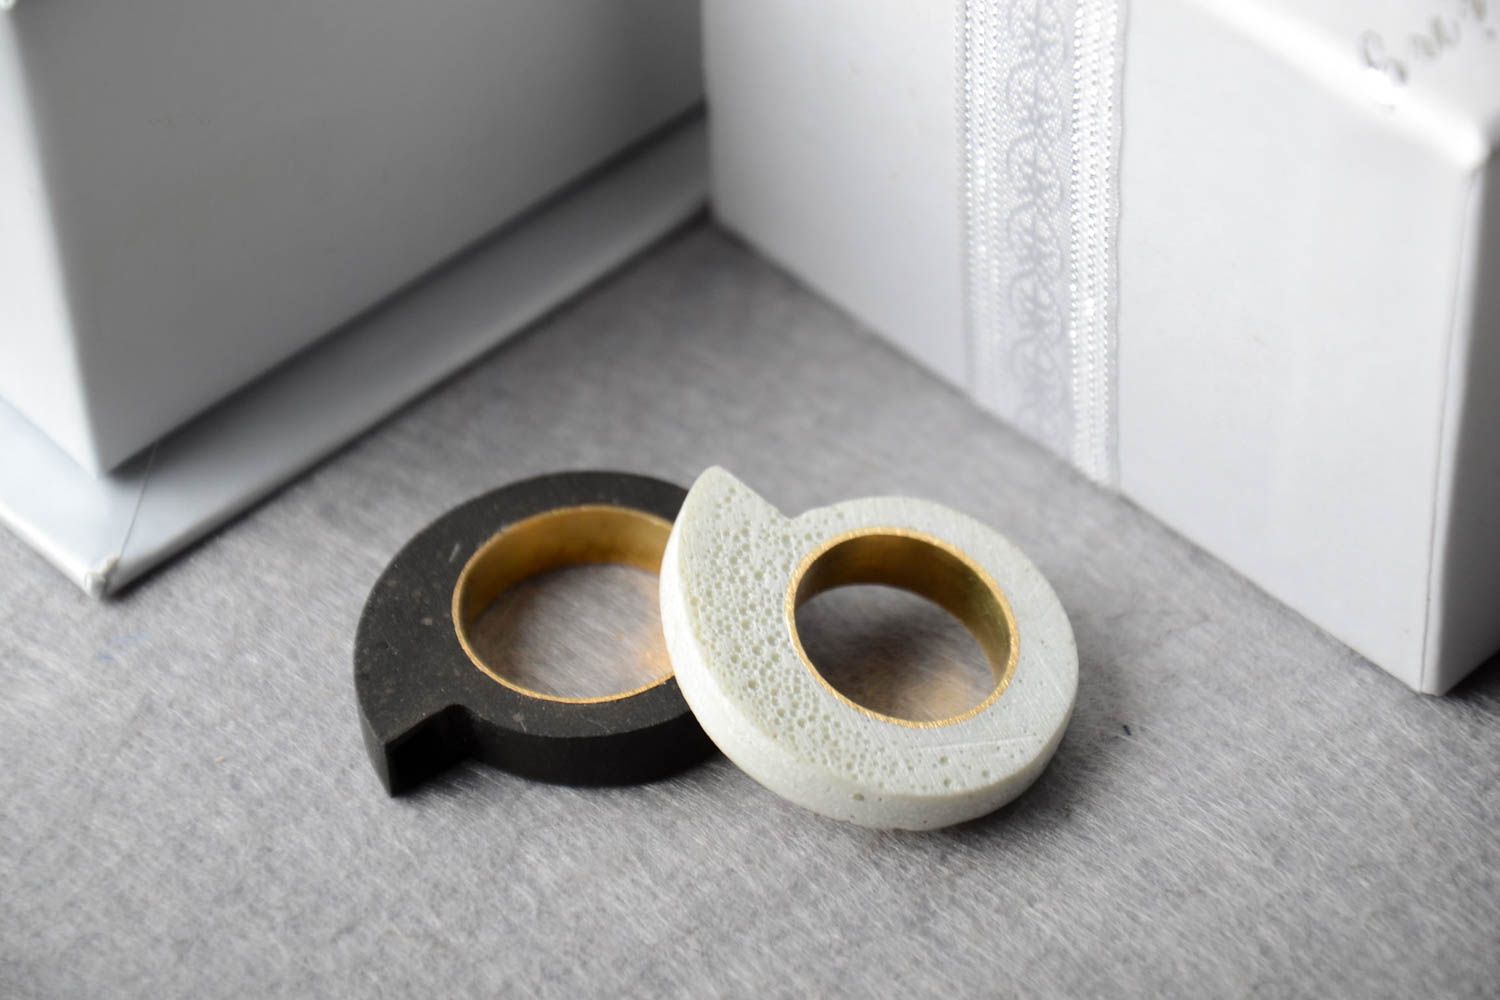 Кольца ручной работы необычные красивые кольца две штуки кольца из латуни фото 1